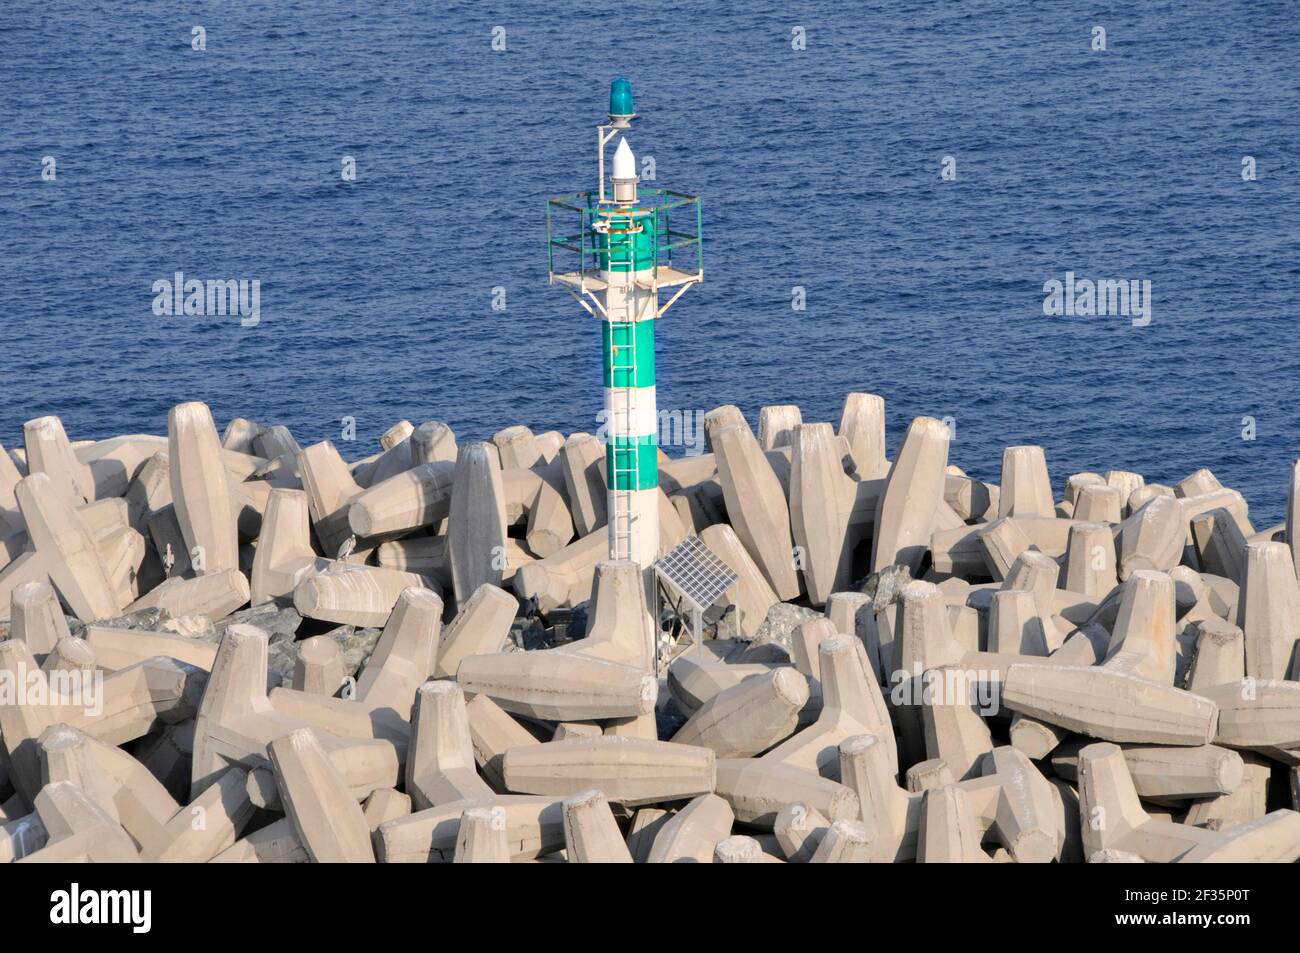 Bloques de hormigón prefabricado pesado tipo Dolosse en grandes pilas AS rompeolas protege el canal de navegación verde marcador de ayuda de la torre y advertir envíos Dubai UAE Foto de stock